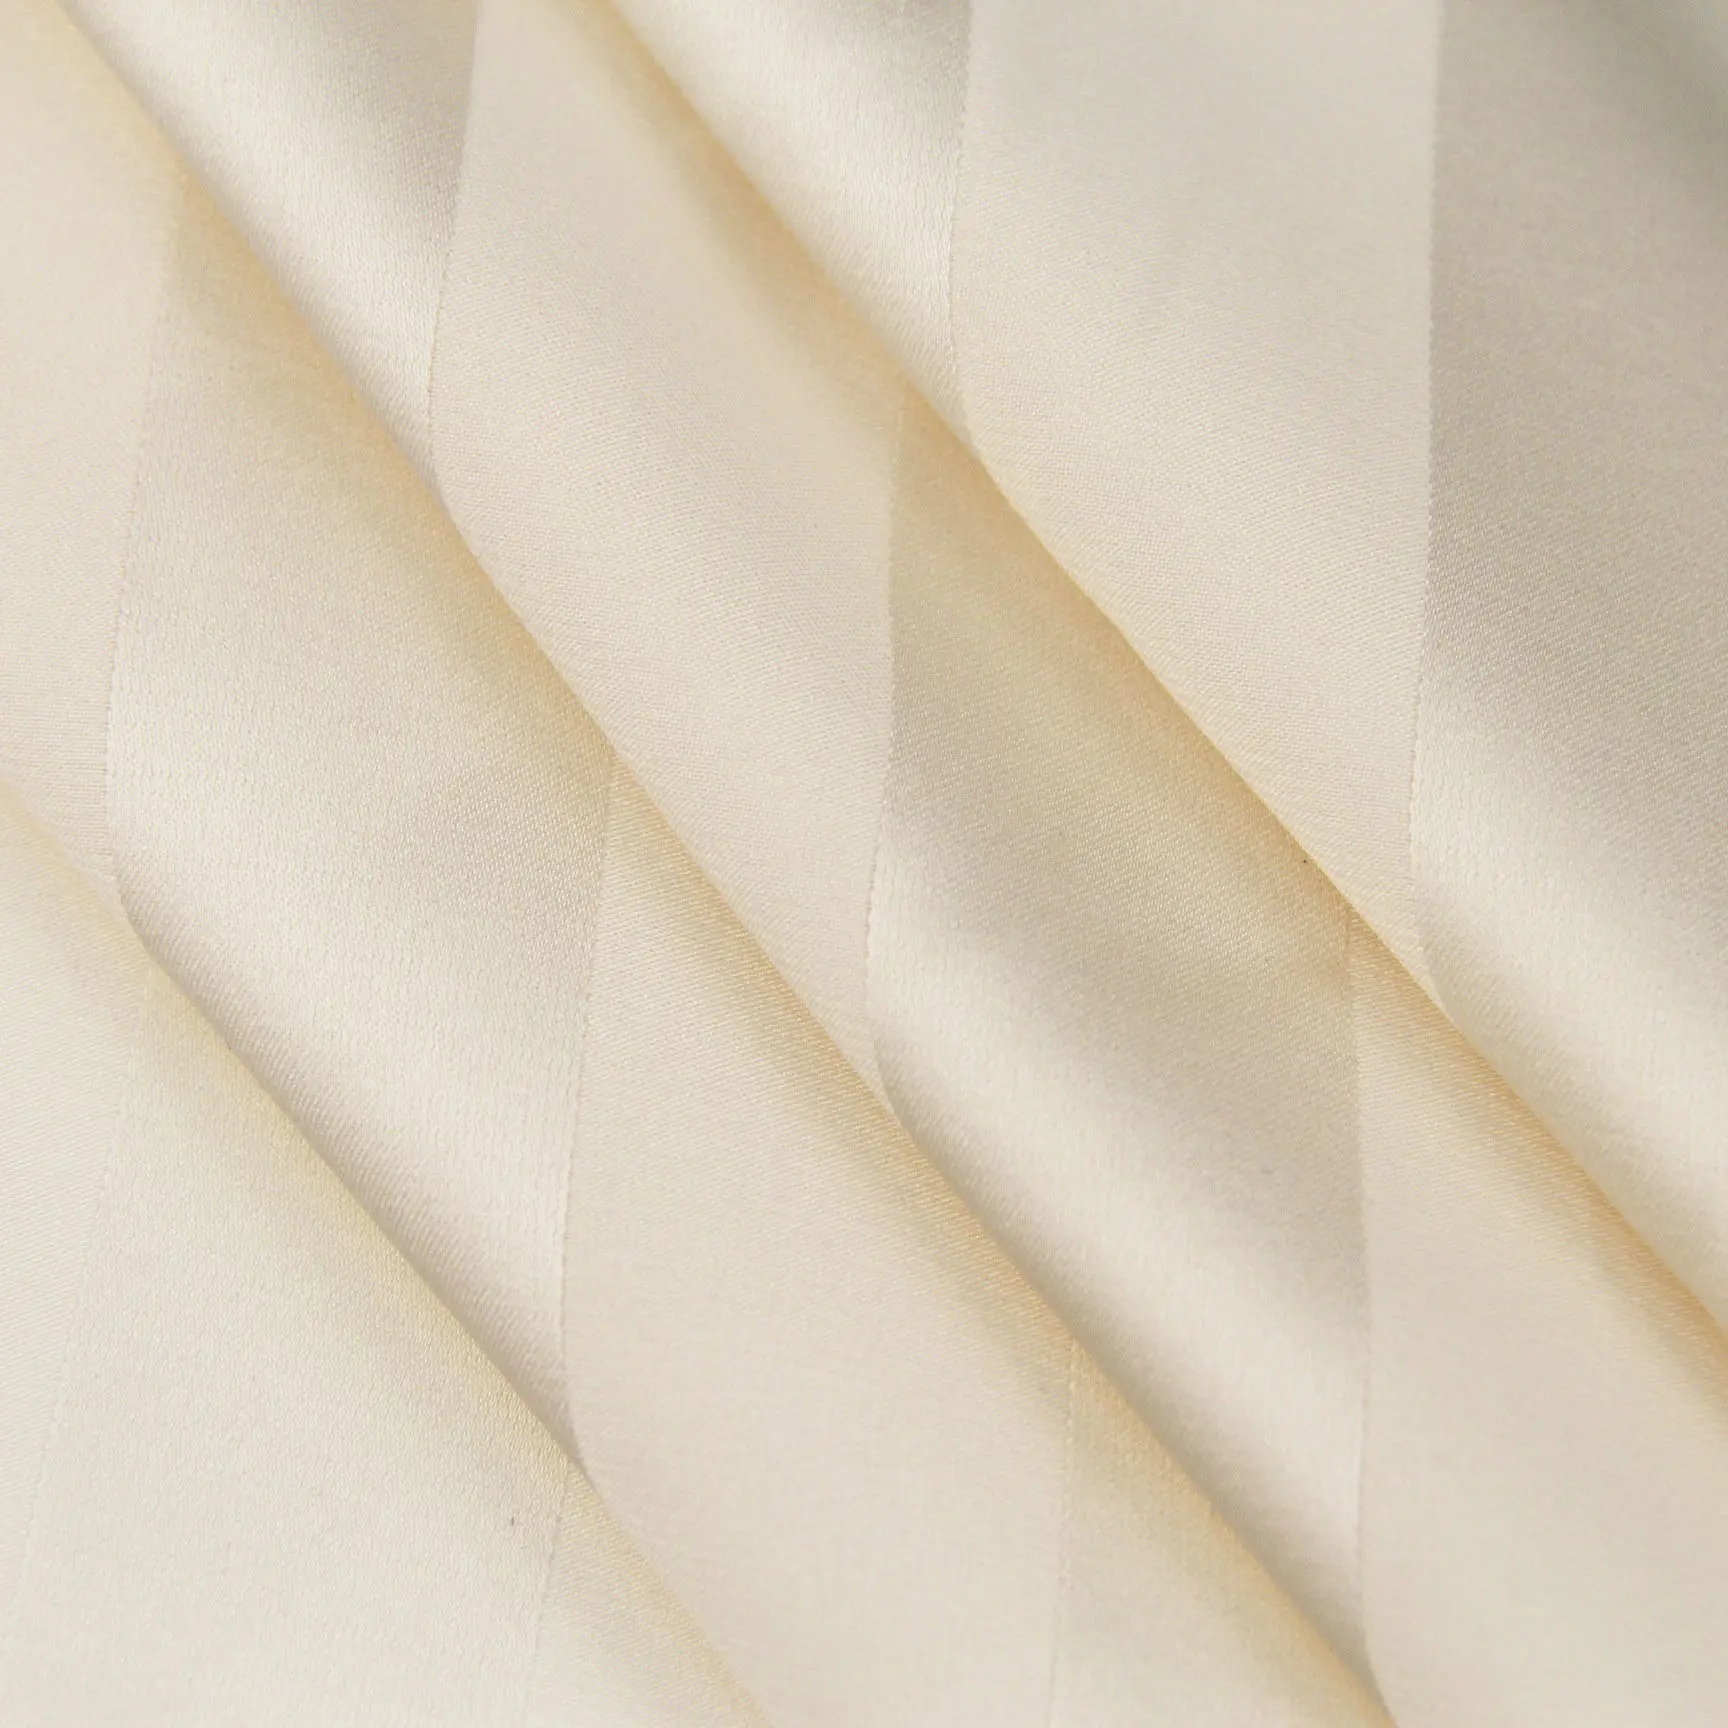 Nuove larghezze Multiple tessuto elastico in poliestere tinto a righe imitazione seta 2 vie tessuto chiffon macchia elasticizzata per pigiami pigiameria